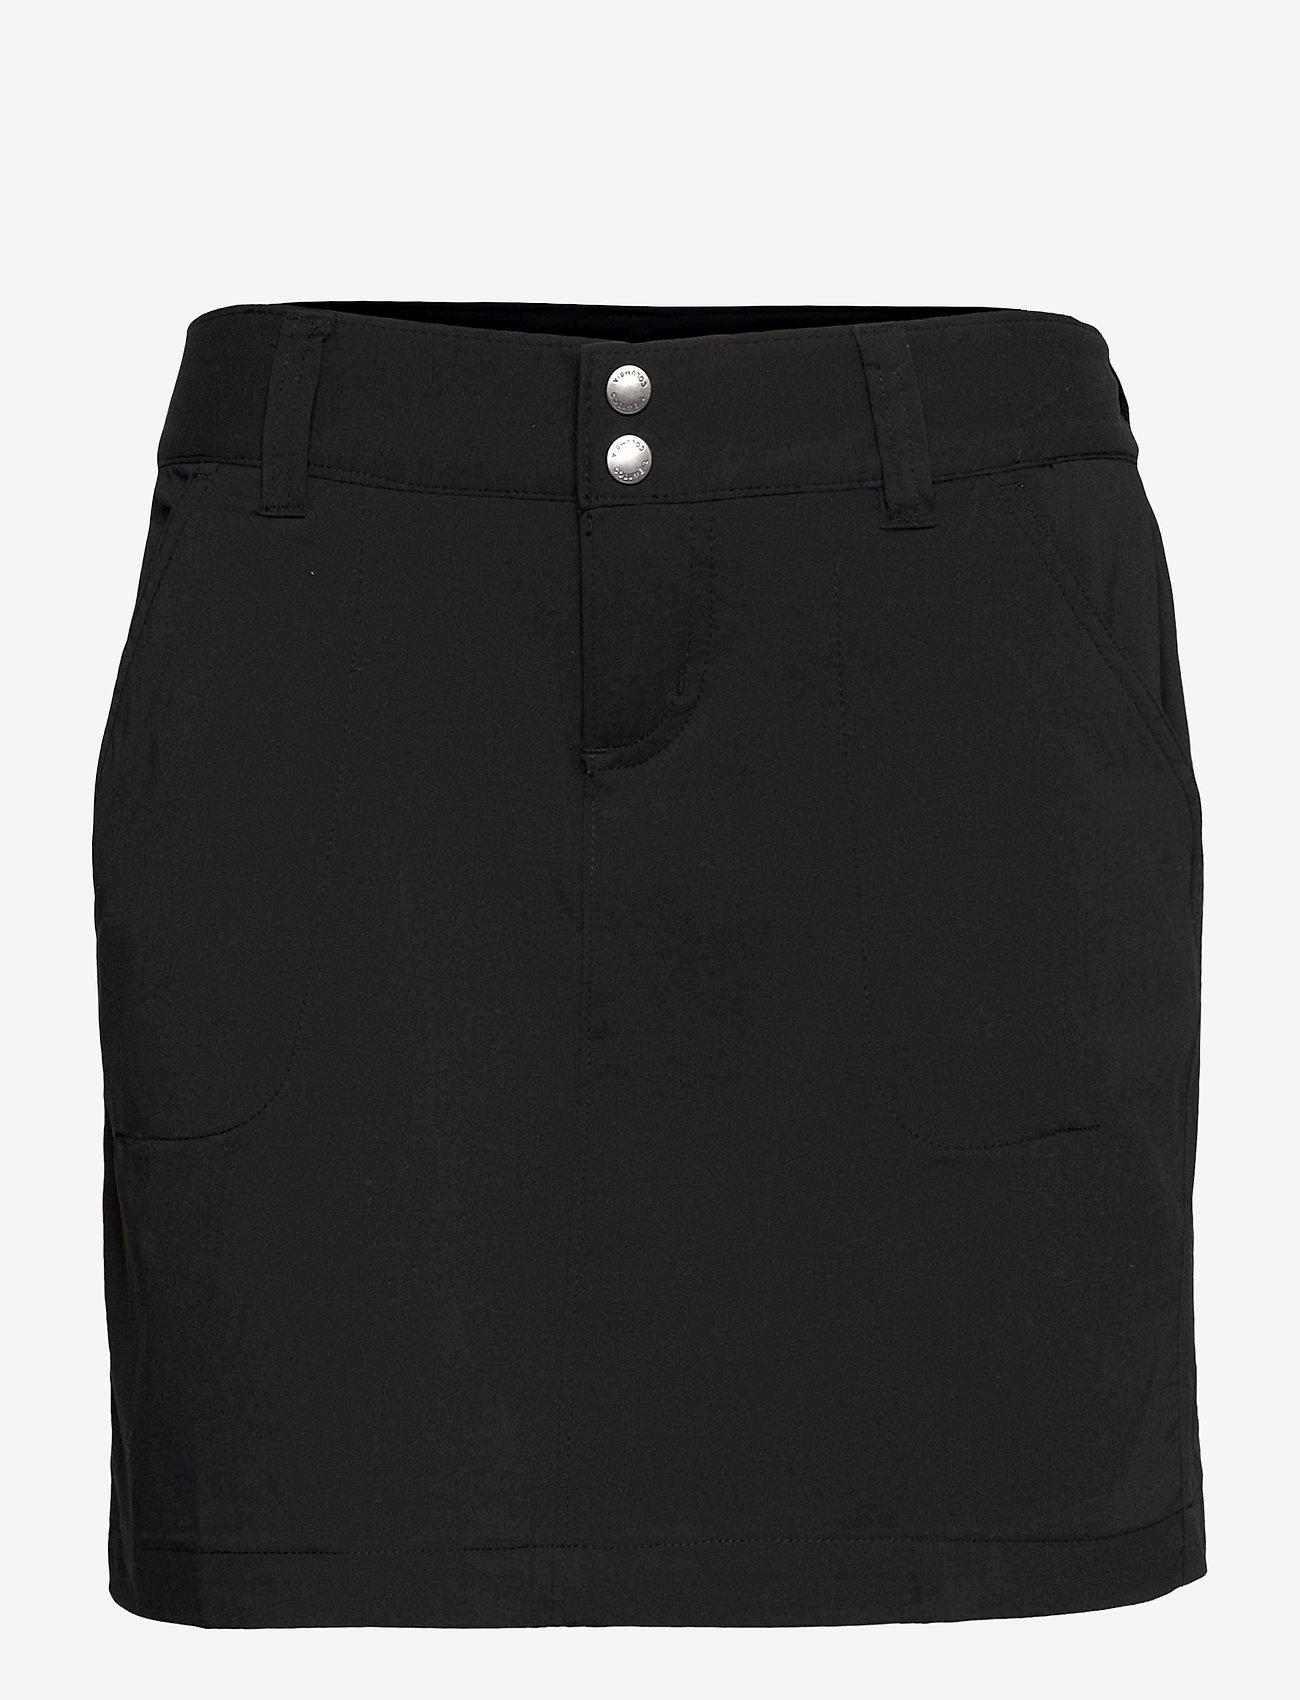 Columbia Sportswear - Saturday Trail Skort - kjolar - black - 0